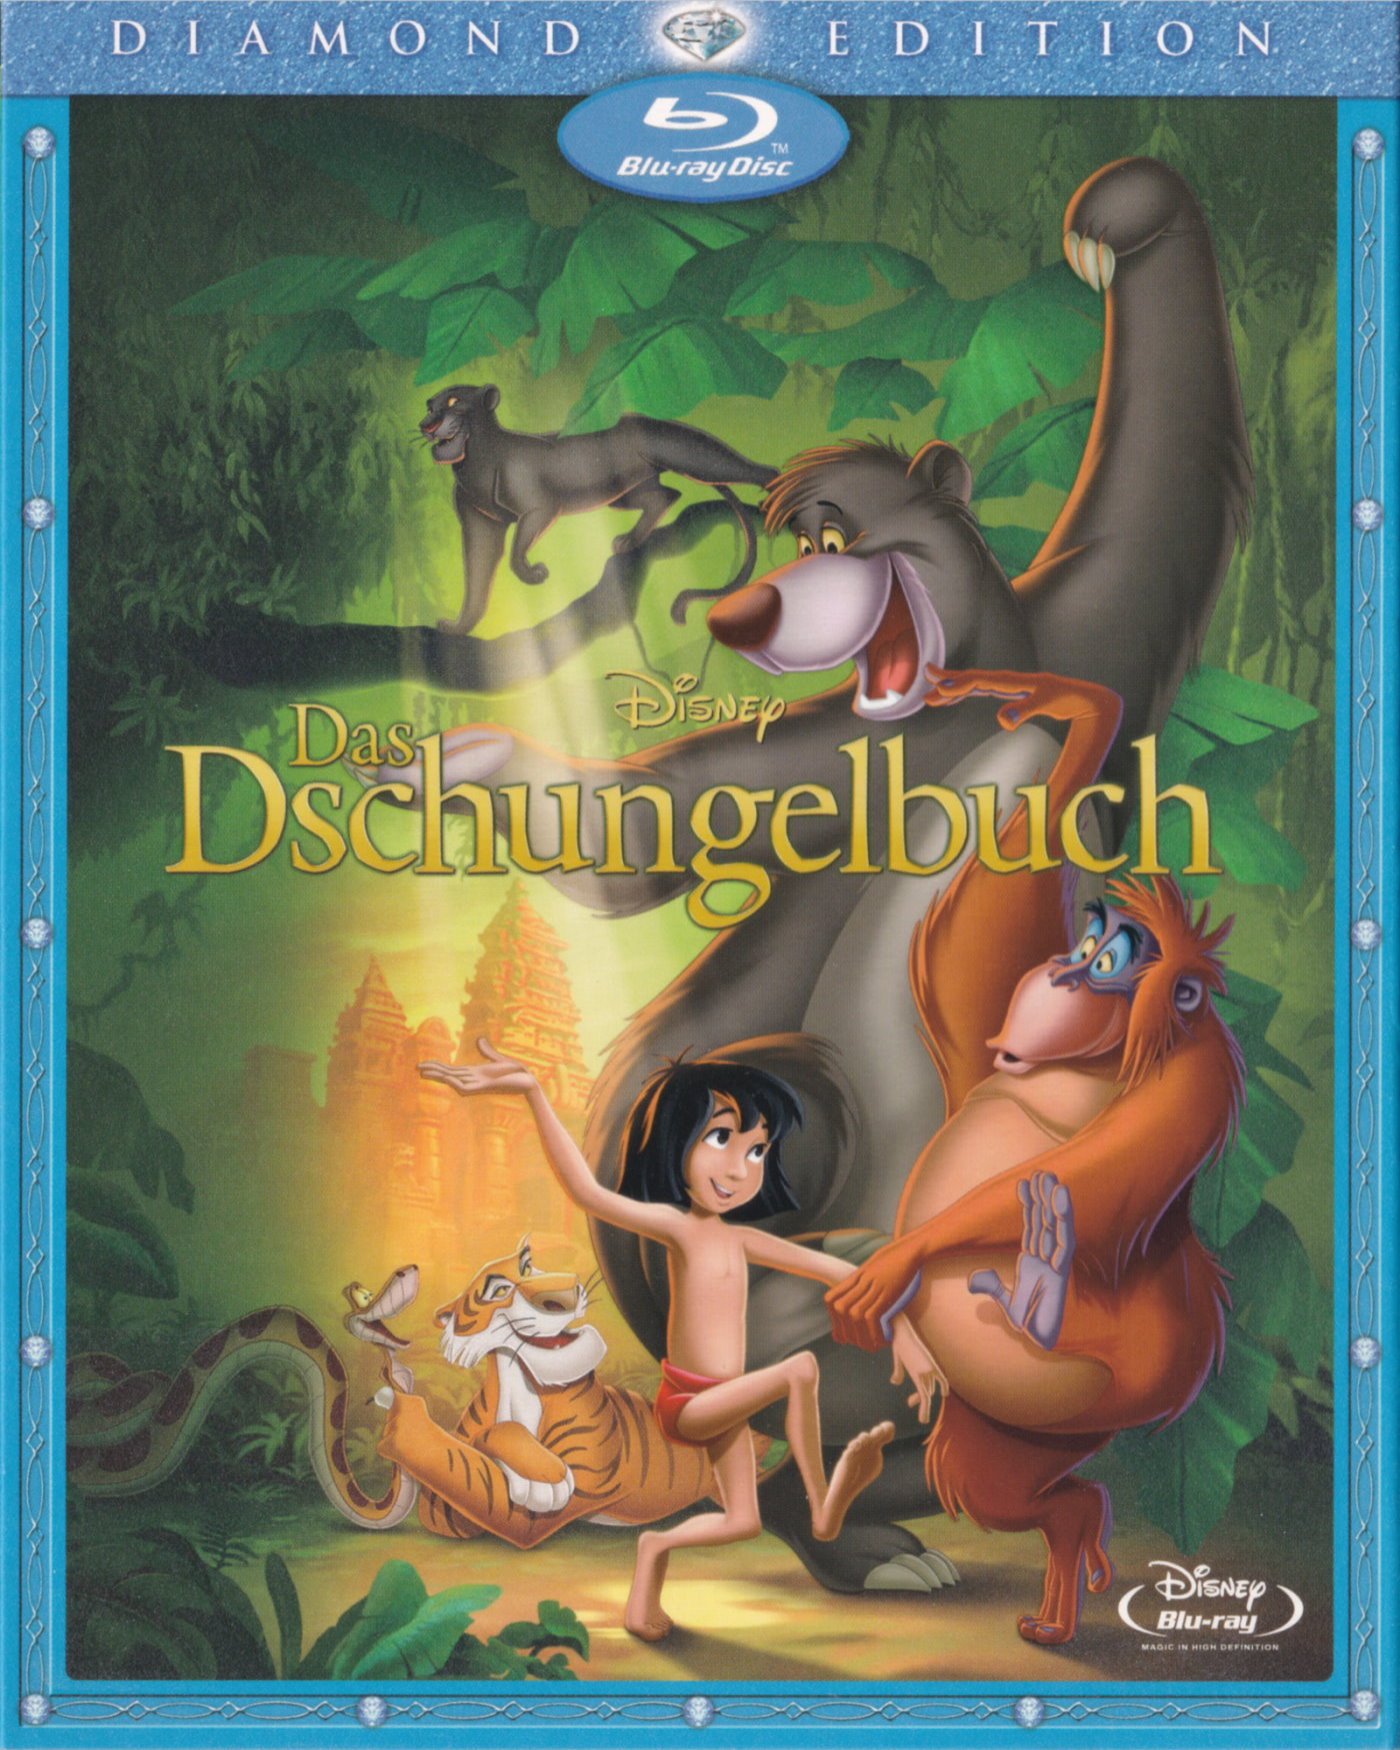 Cover - Das Dschungelbuch.jpg